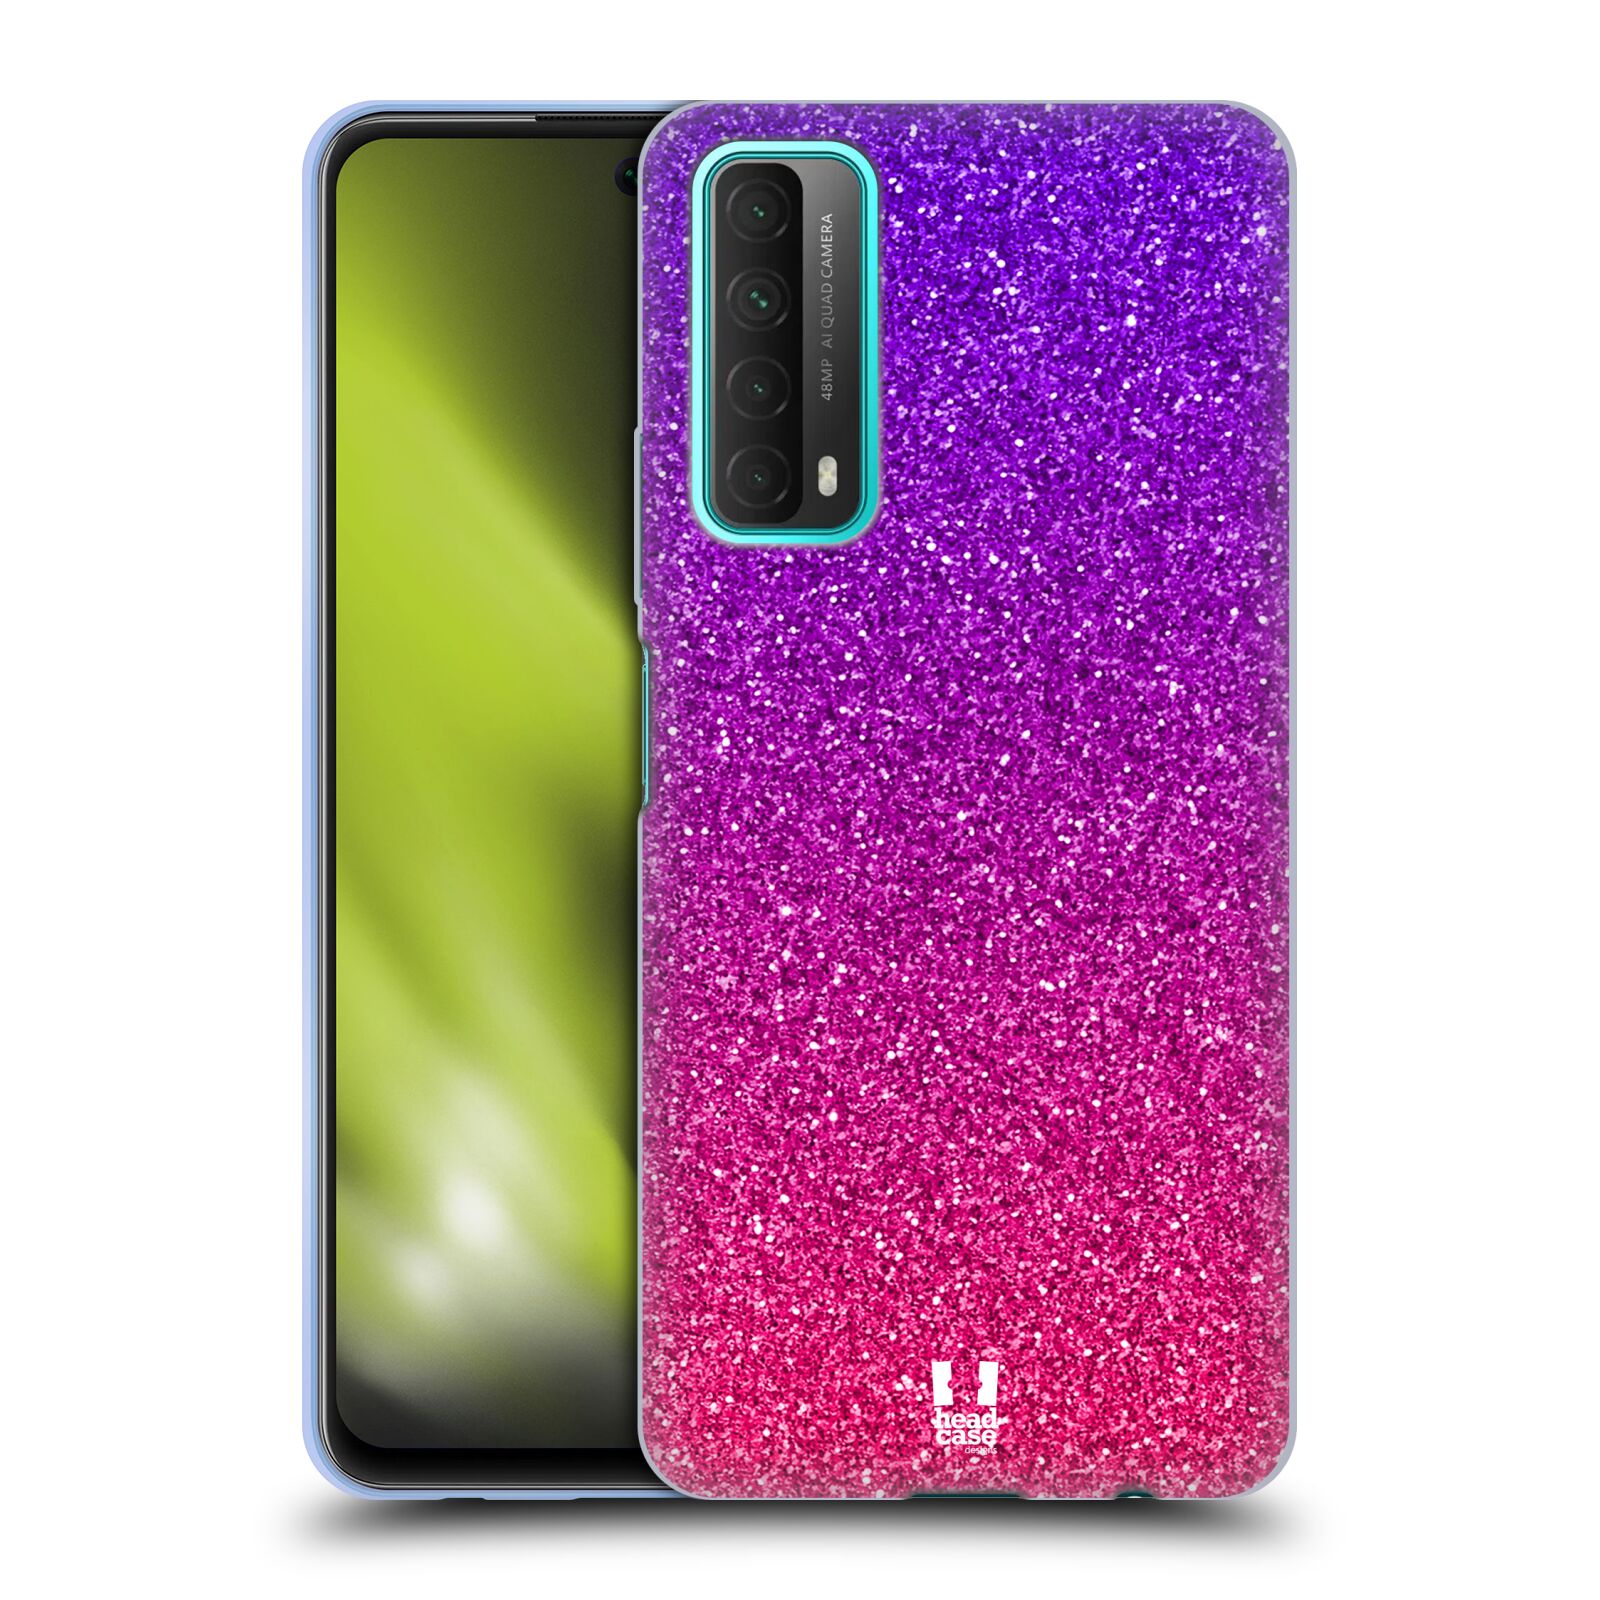 Silikonové pouzdro na mobil Huawei P Smart (2021) - Head Case - Mix Pink (Silikonový kryt, obal, pouzdro na mobilní telefon Huawei P Smart (2021) s motivem Mix Pink)